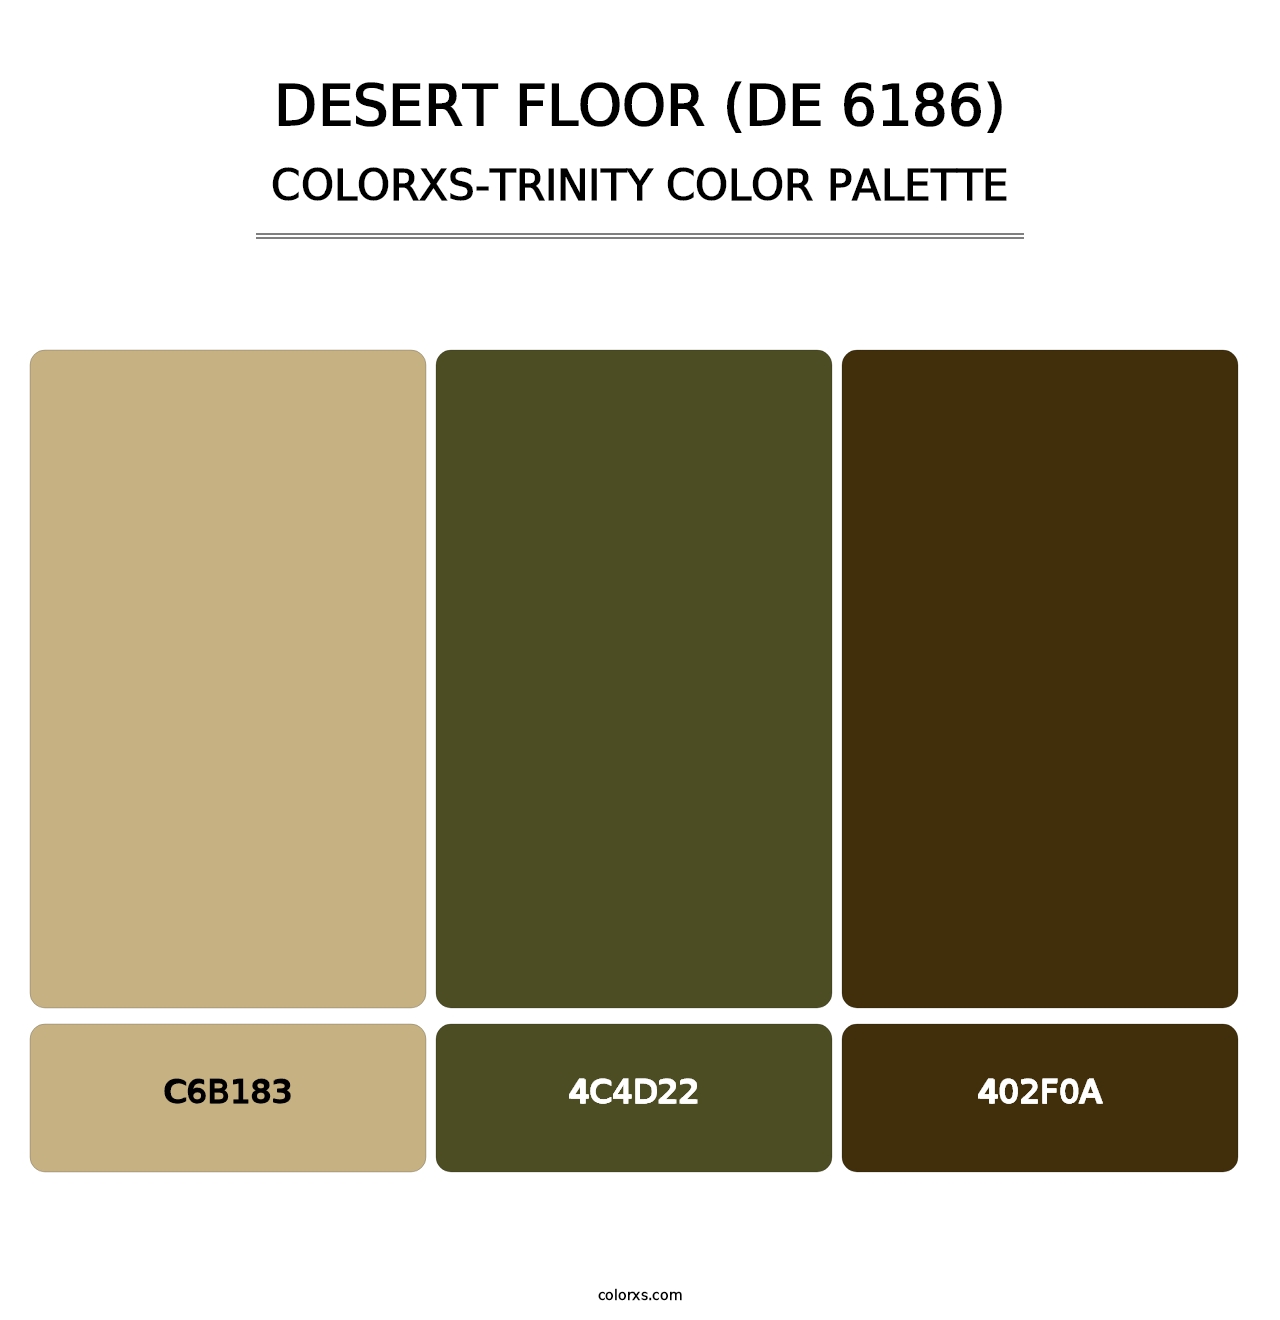 Desert Floor (DE 6186) - Colorxs Trinity Palette